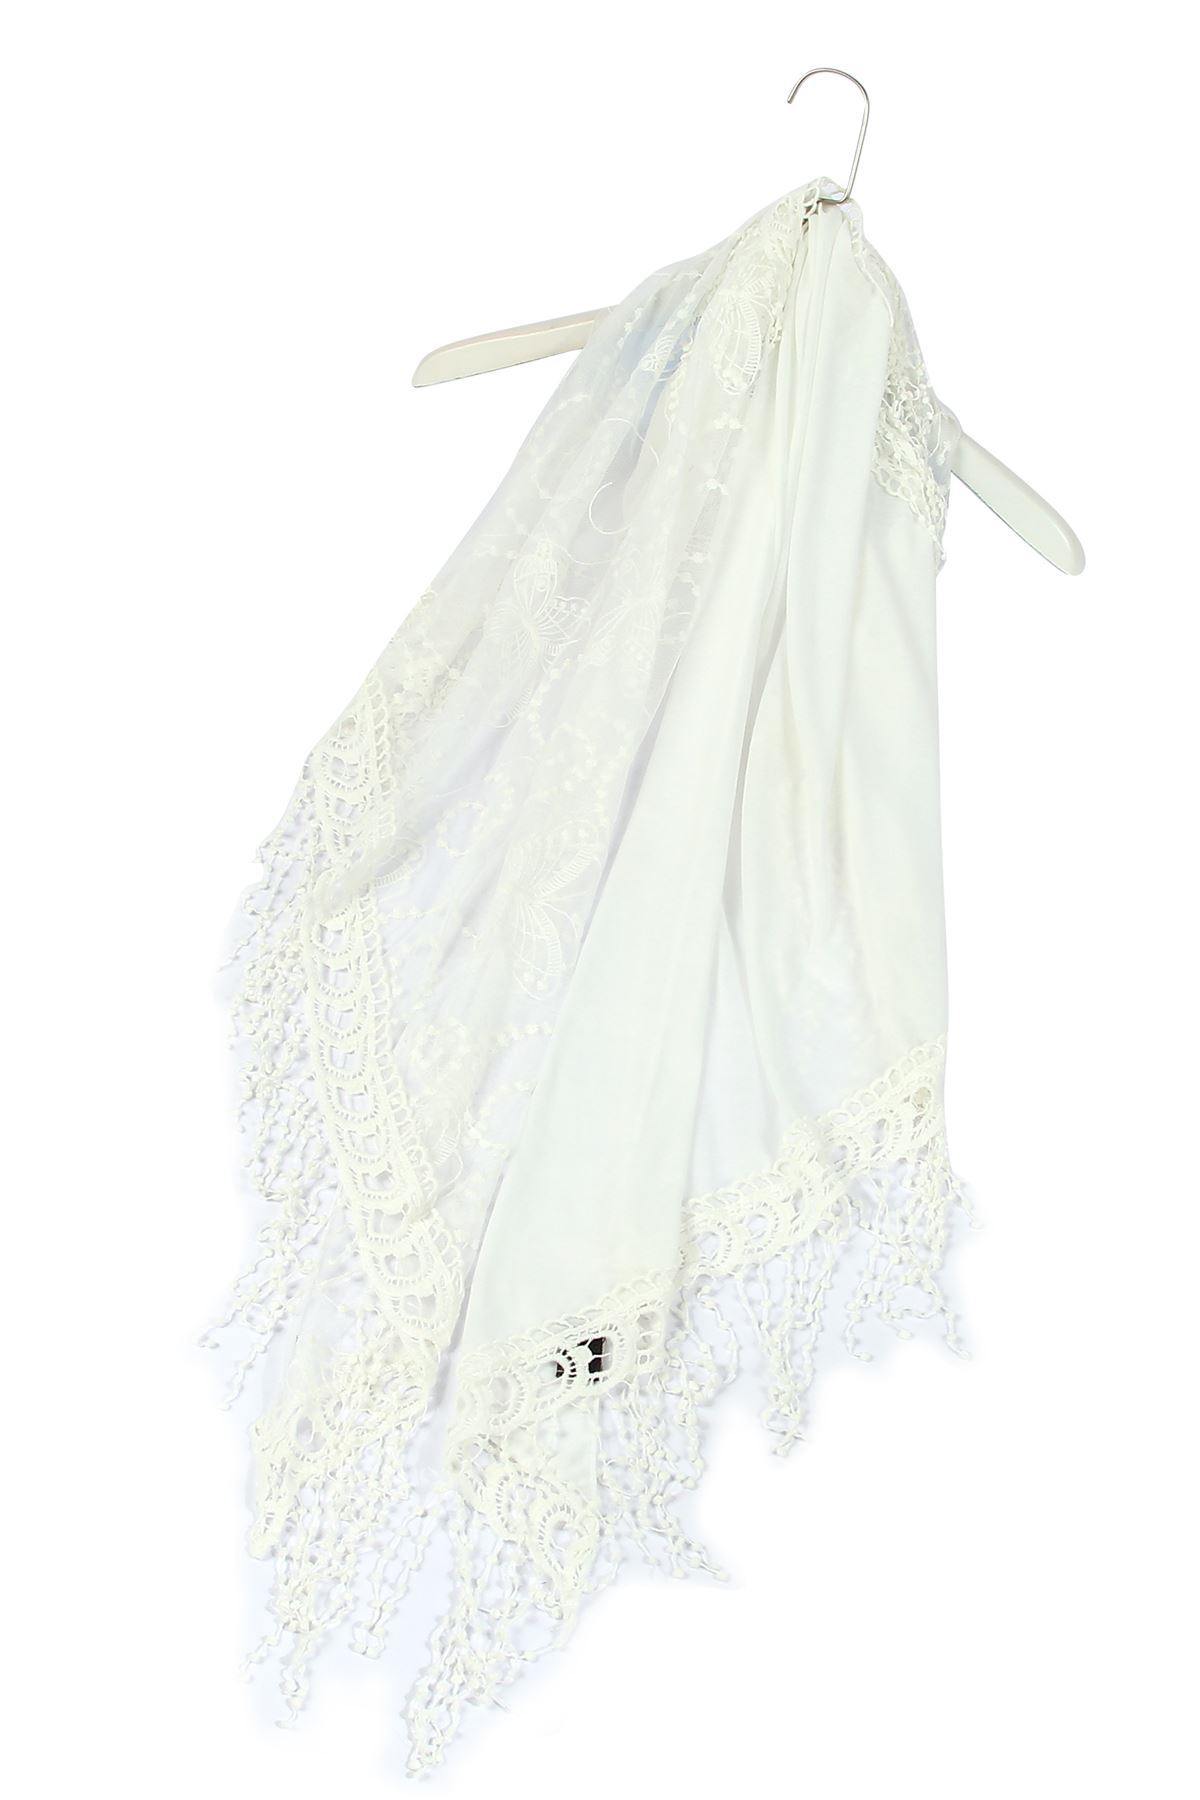 Bavlnený lichobežníkový šál-šatka, 80 cm x 198 cm x 70 cm, Motýlí a krajkový vzor, Biela - KlenotTV.sk